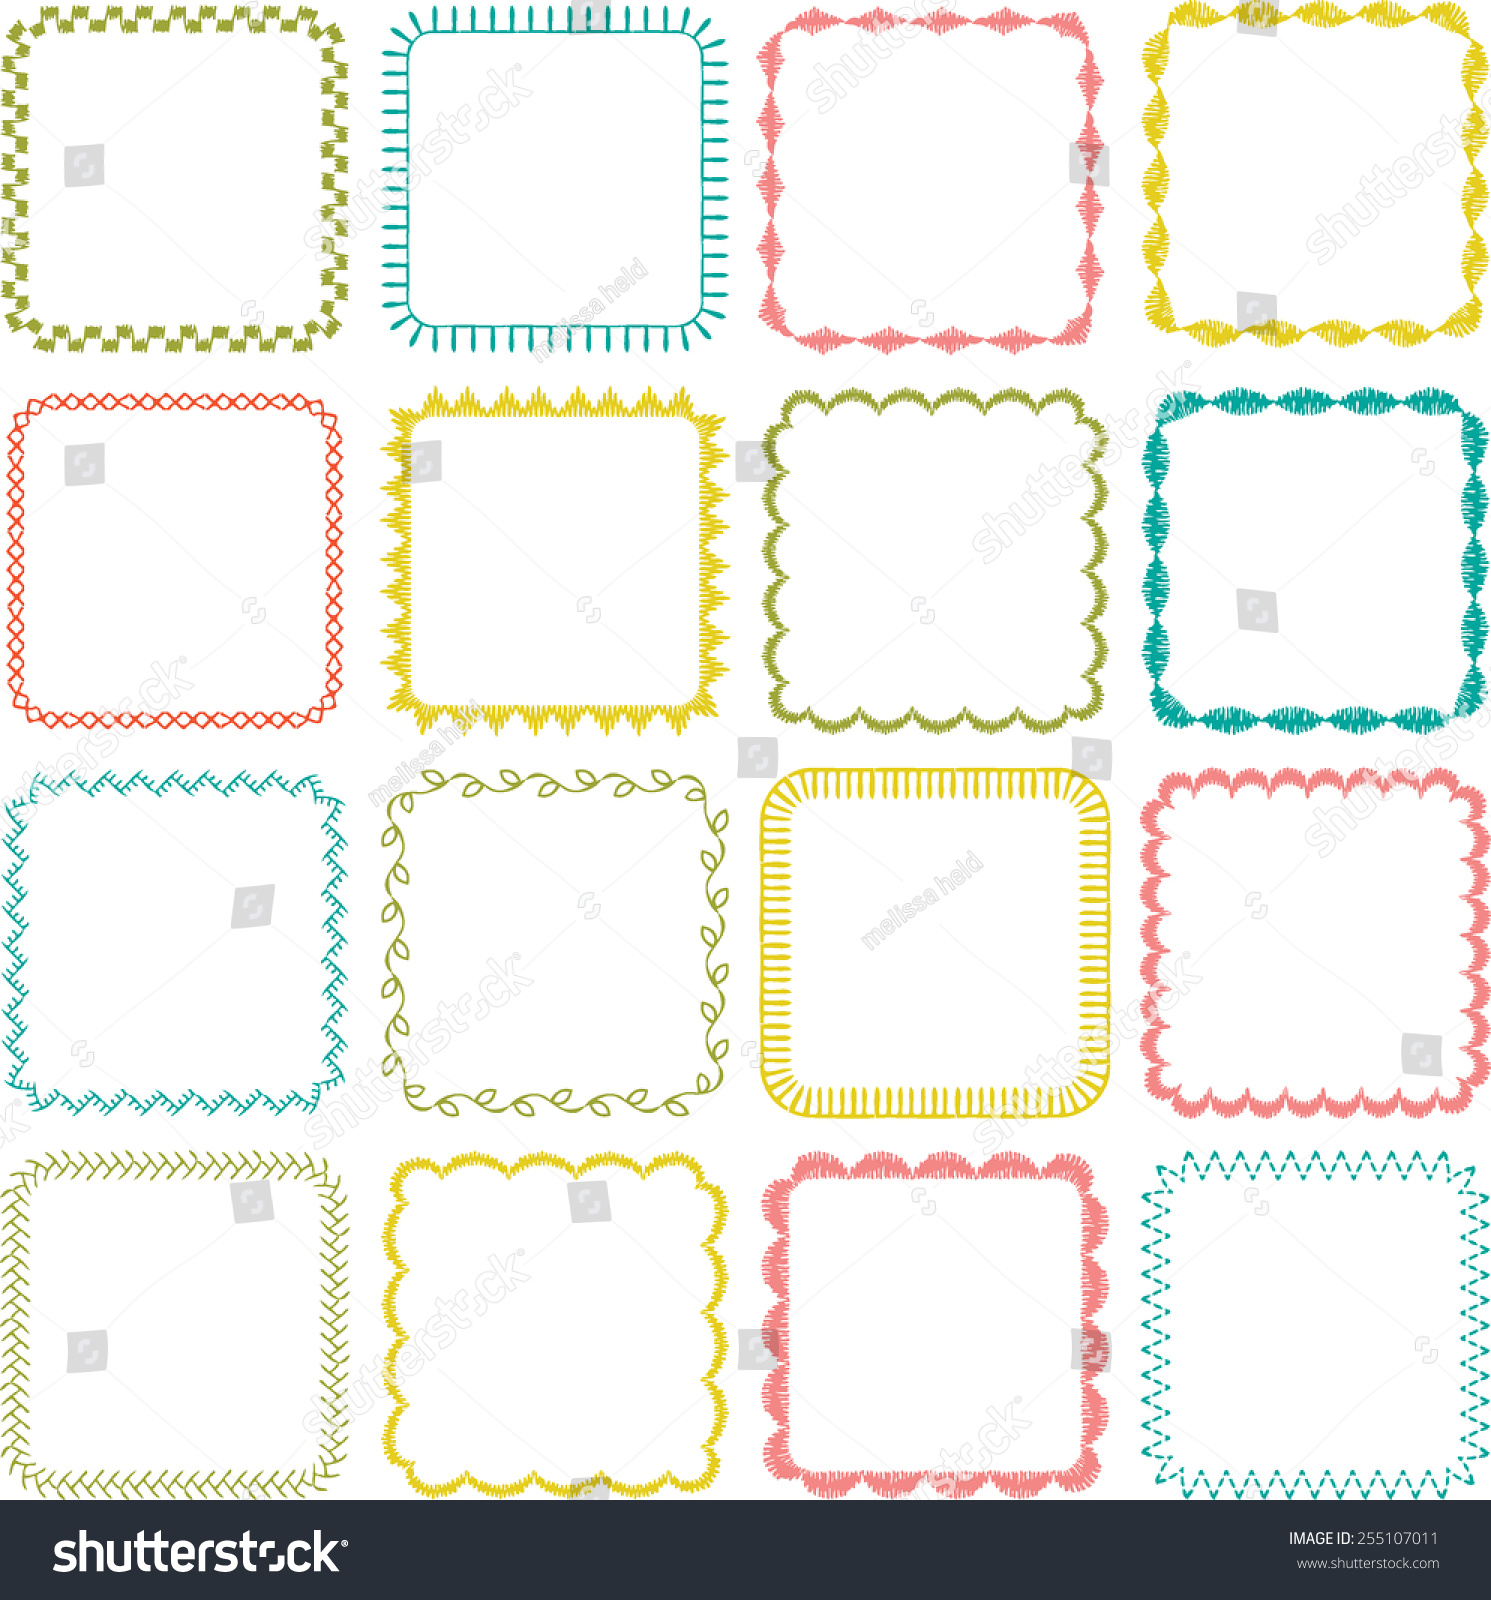 Square Frames Stock Vector Illustration 255107011 : Shutterstock